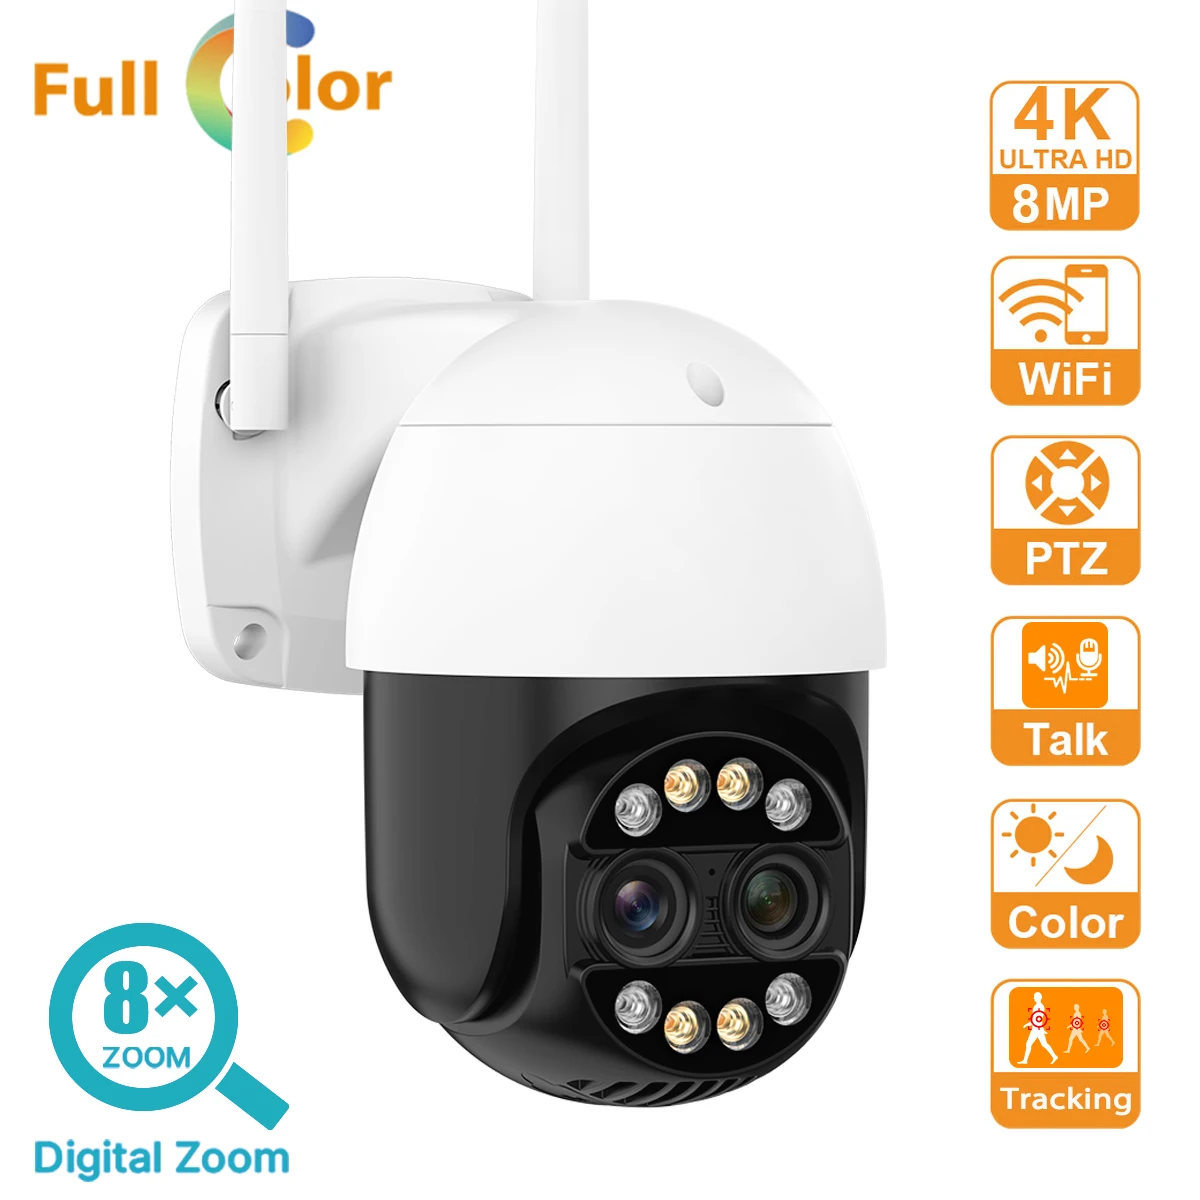 4K 8MP Двухобъективная Умная Wifi PTZ-камера с 8-кратным Цифровым Зумом AI Обнаружение человека Автоматическое Отслеживание ONVIF Беспроводная IP-камера видеонаблюдения